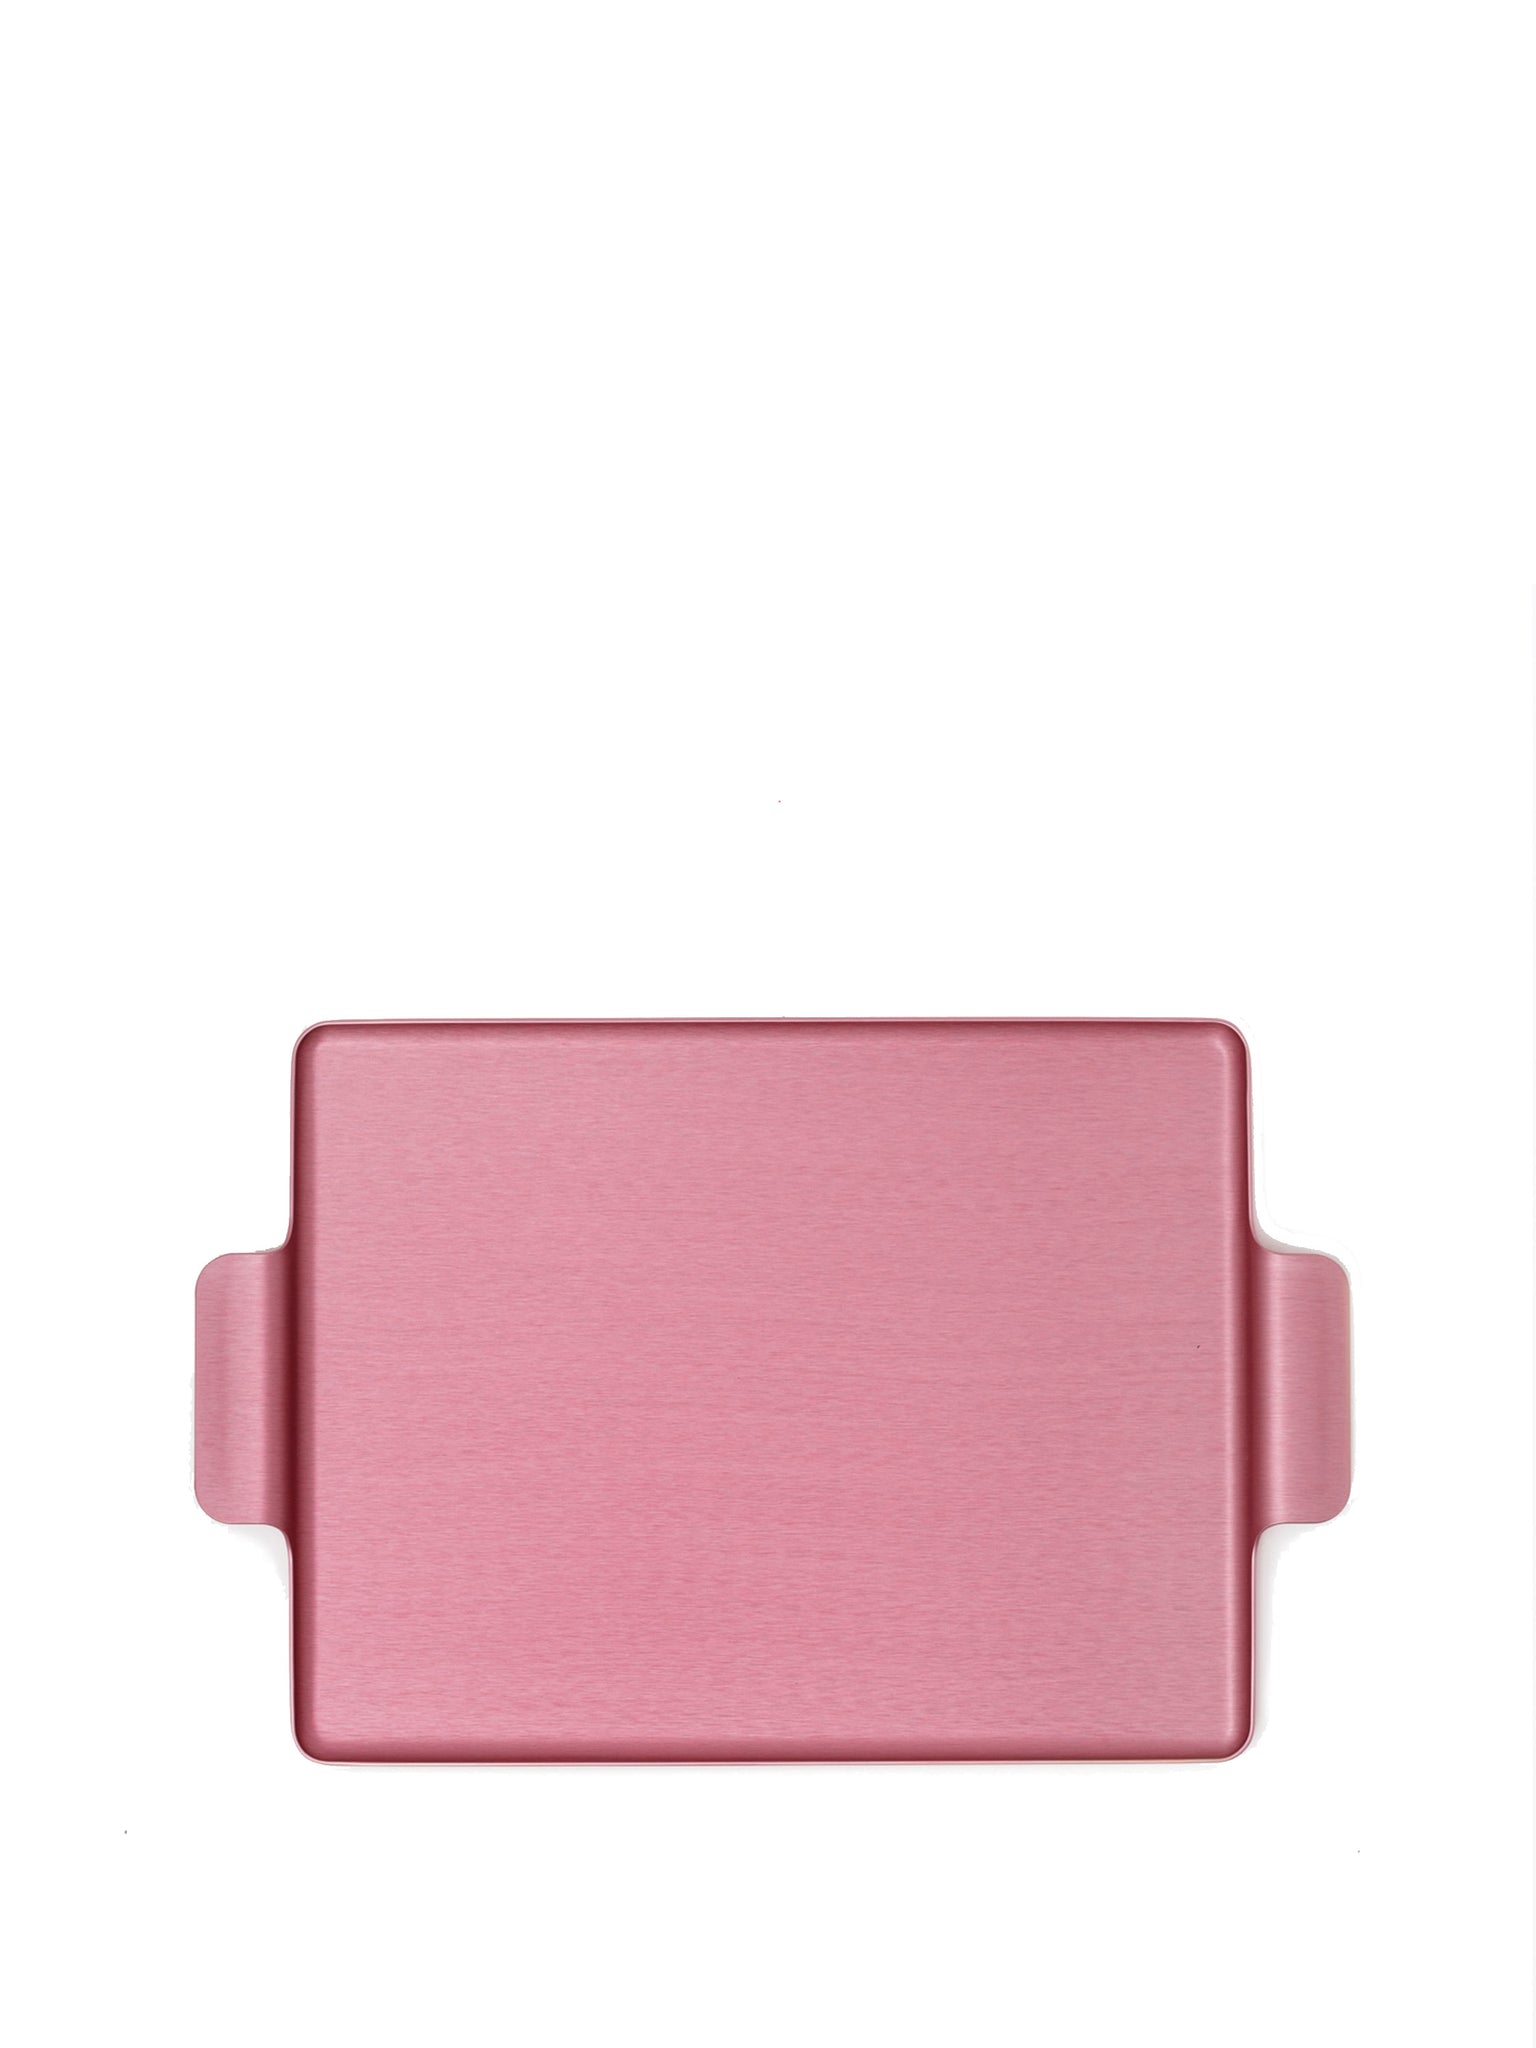 Kaymet metal serving tray 12.5" in pink